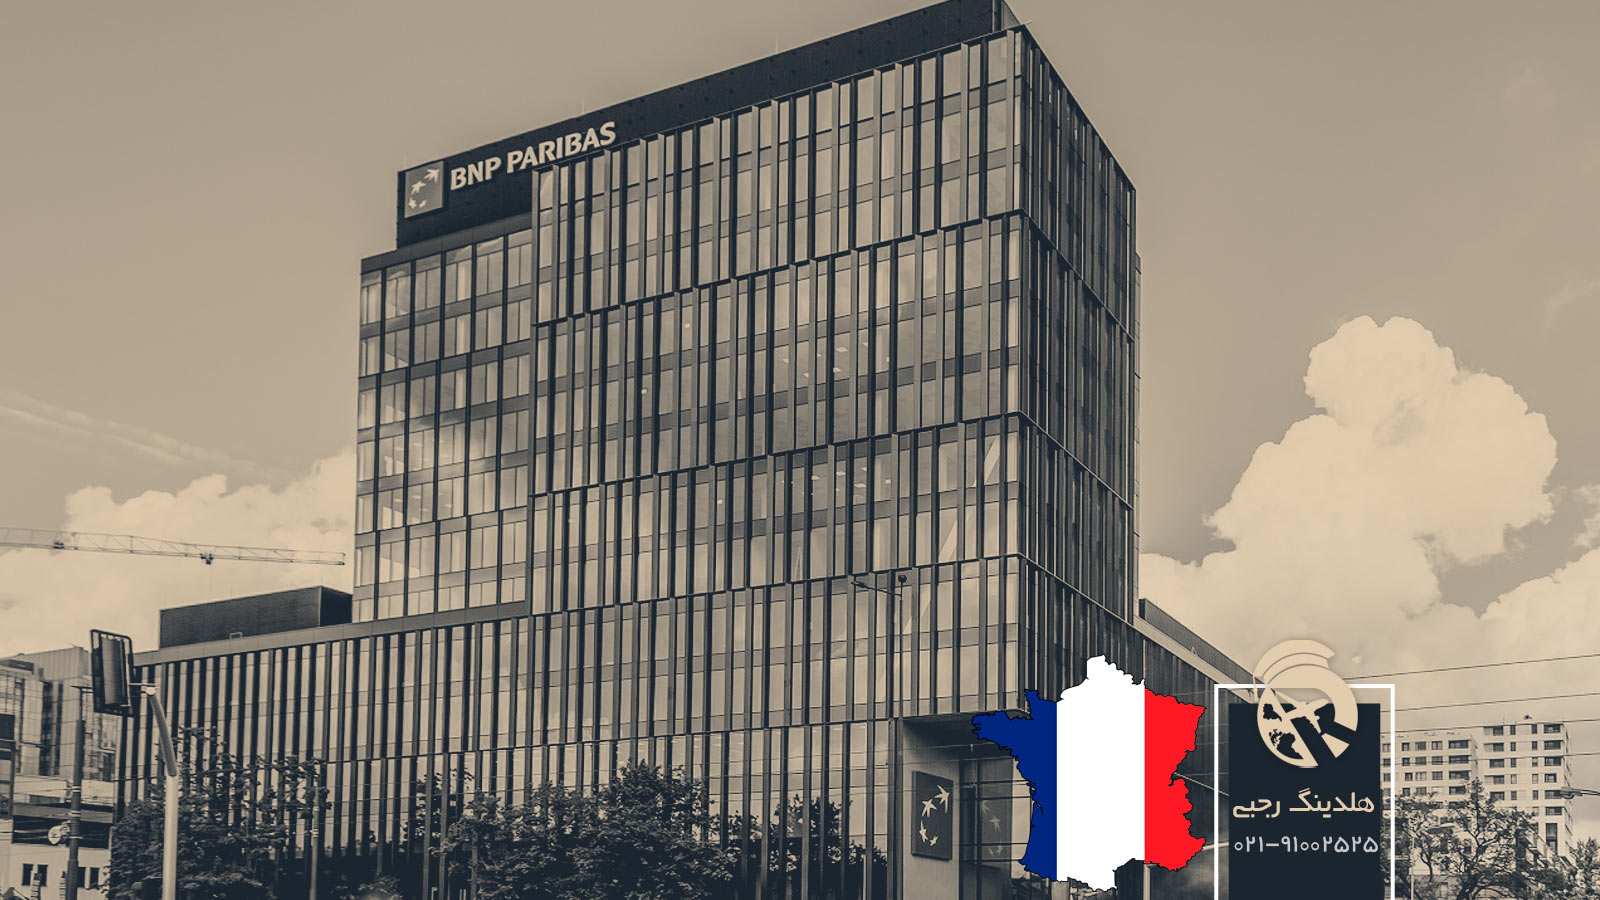 شرکت ها و بانک های معروف فرانسه